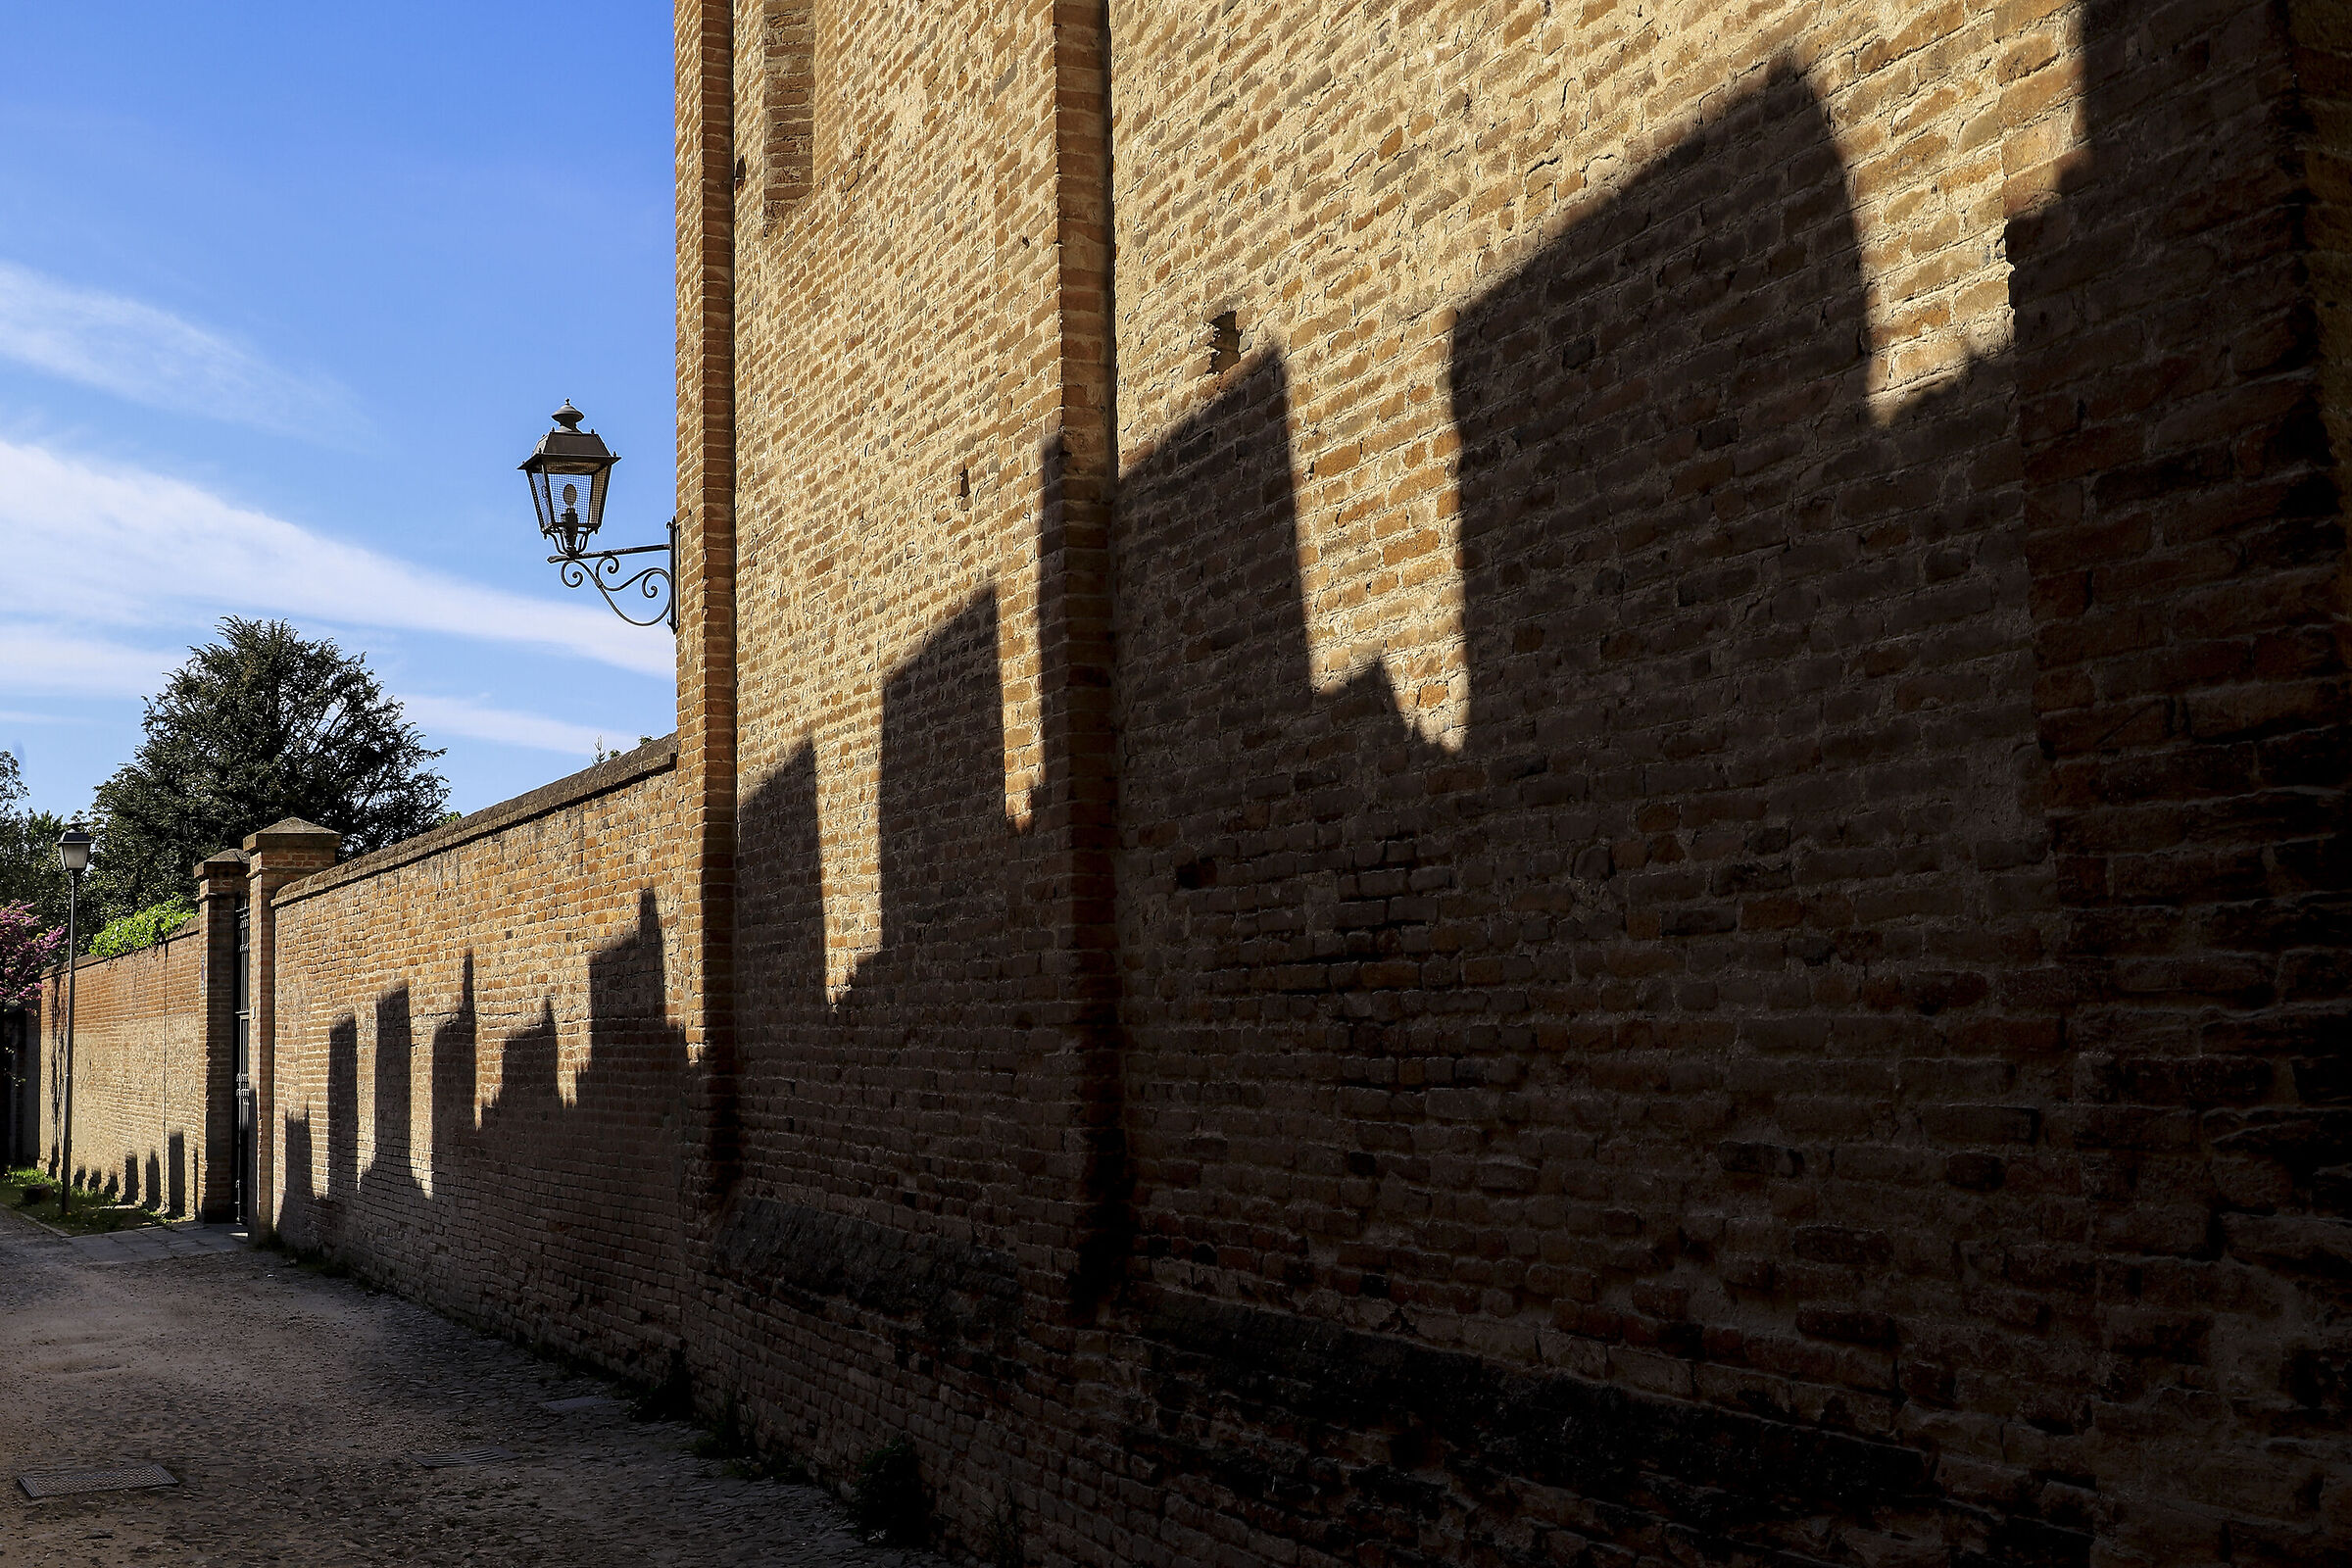 Montagnana and its shadows...